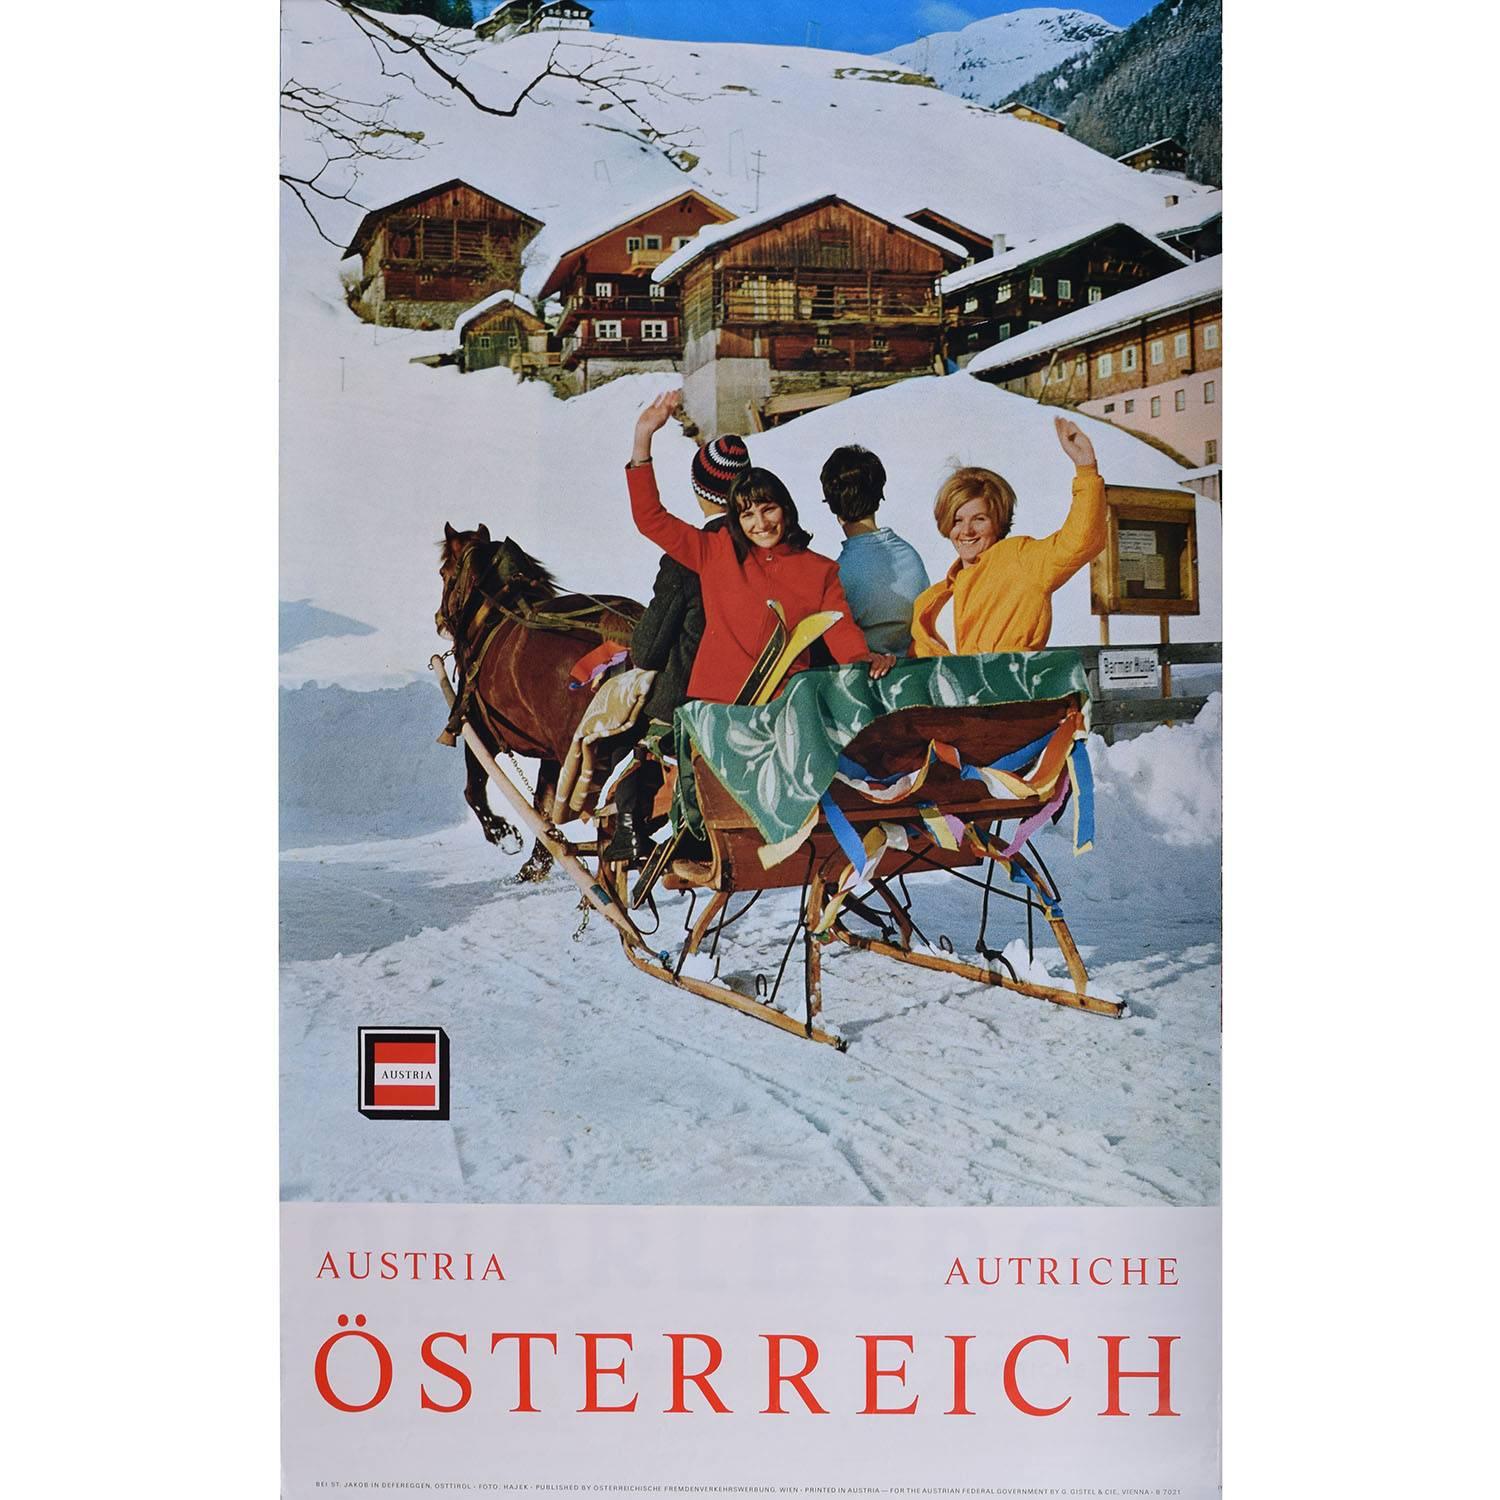 Unknown Landscape Print - Austria Österreich - original vintage ski travel poster